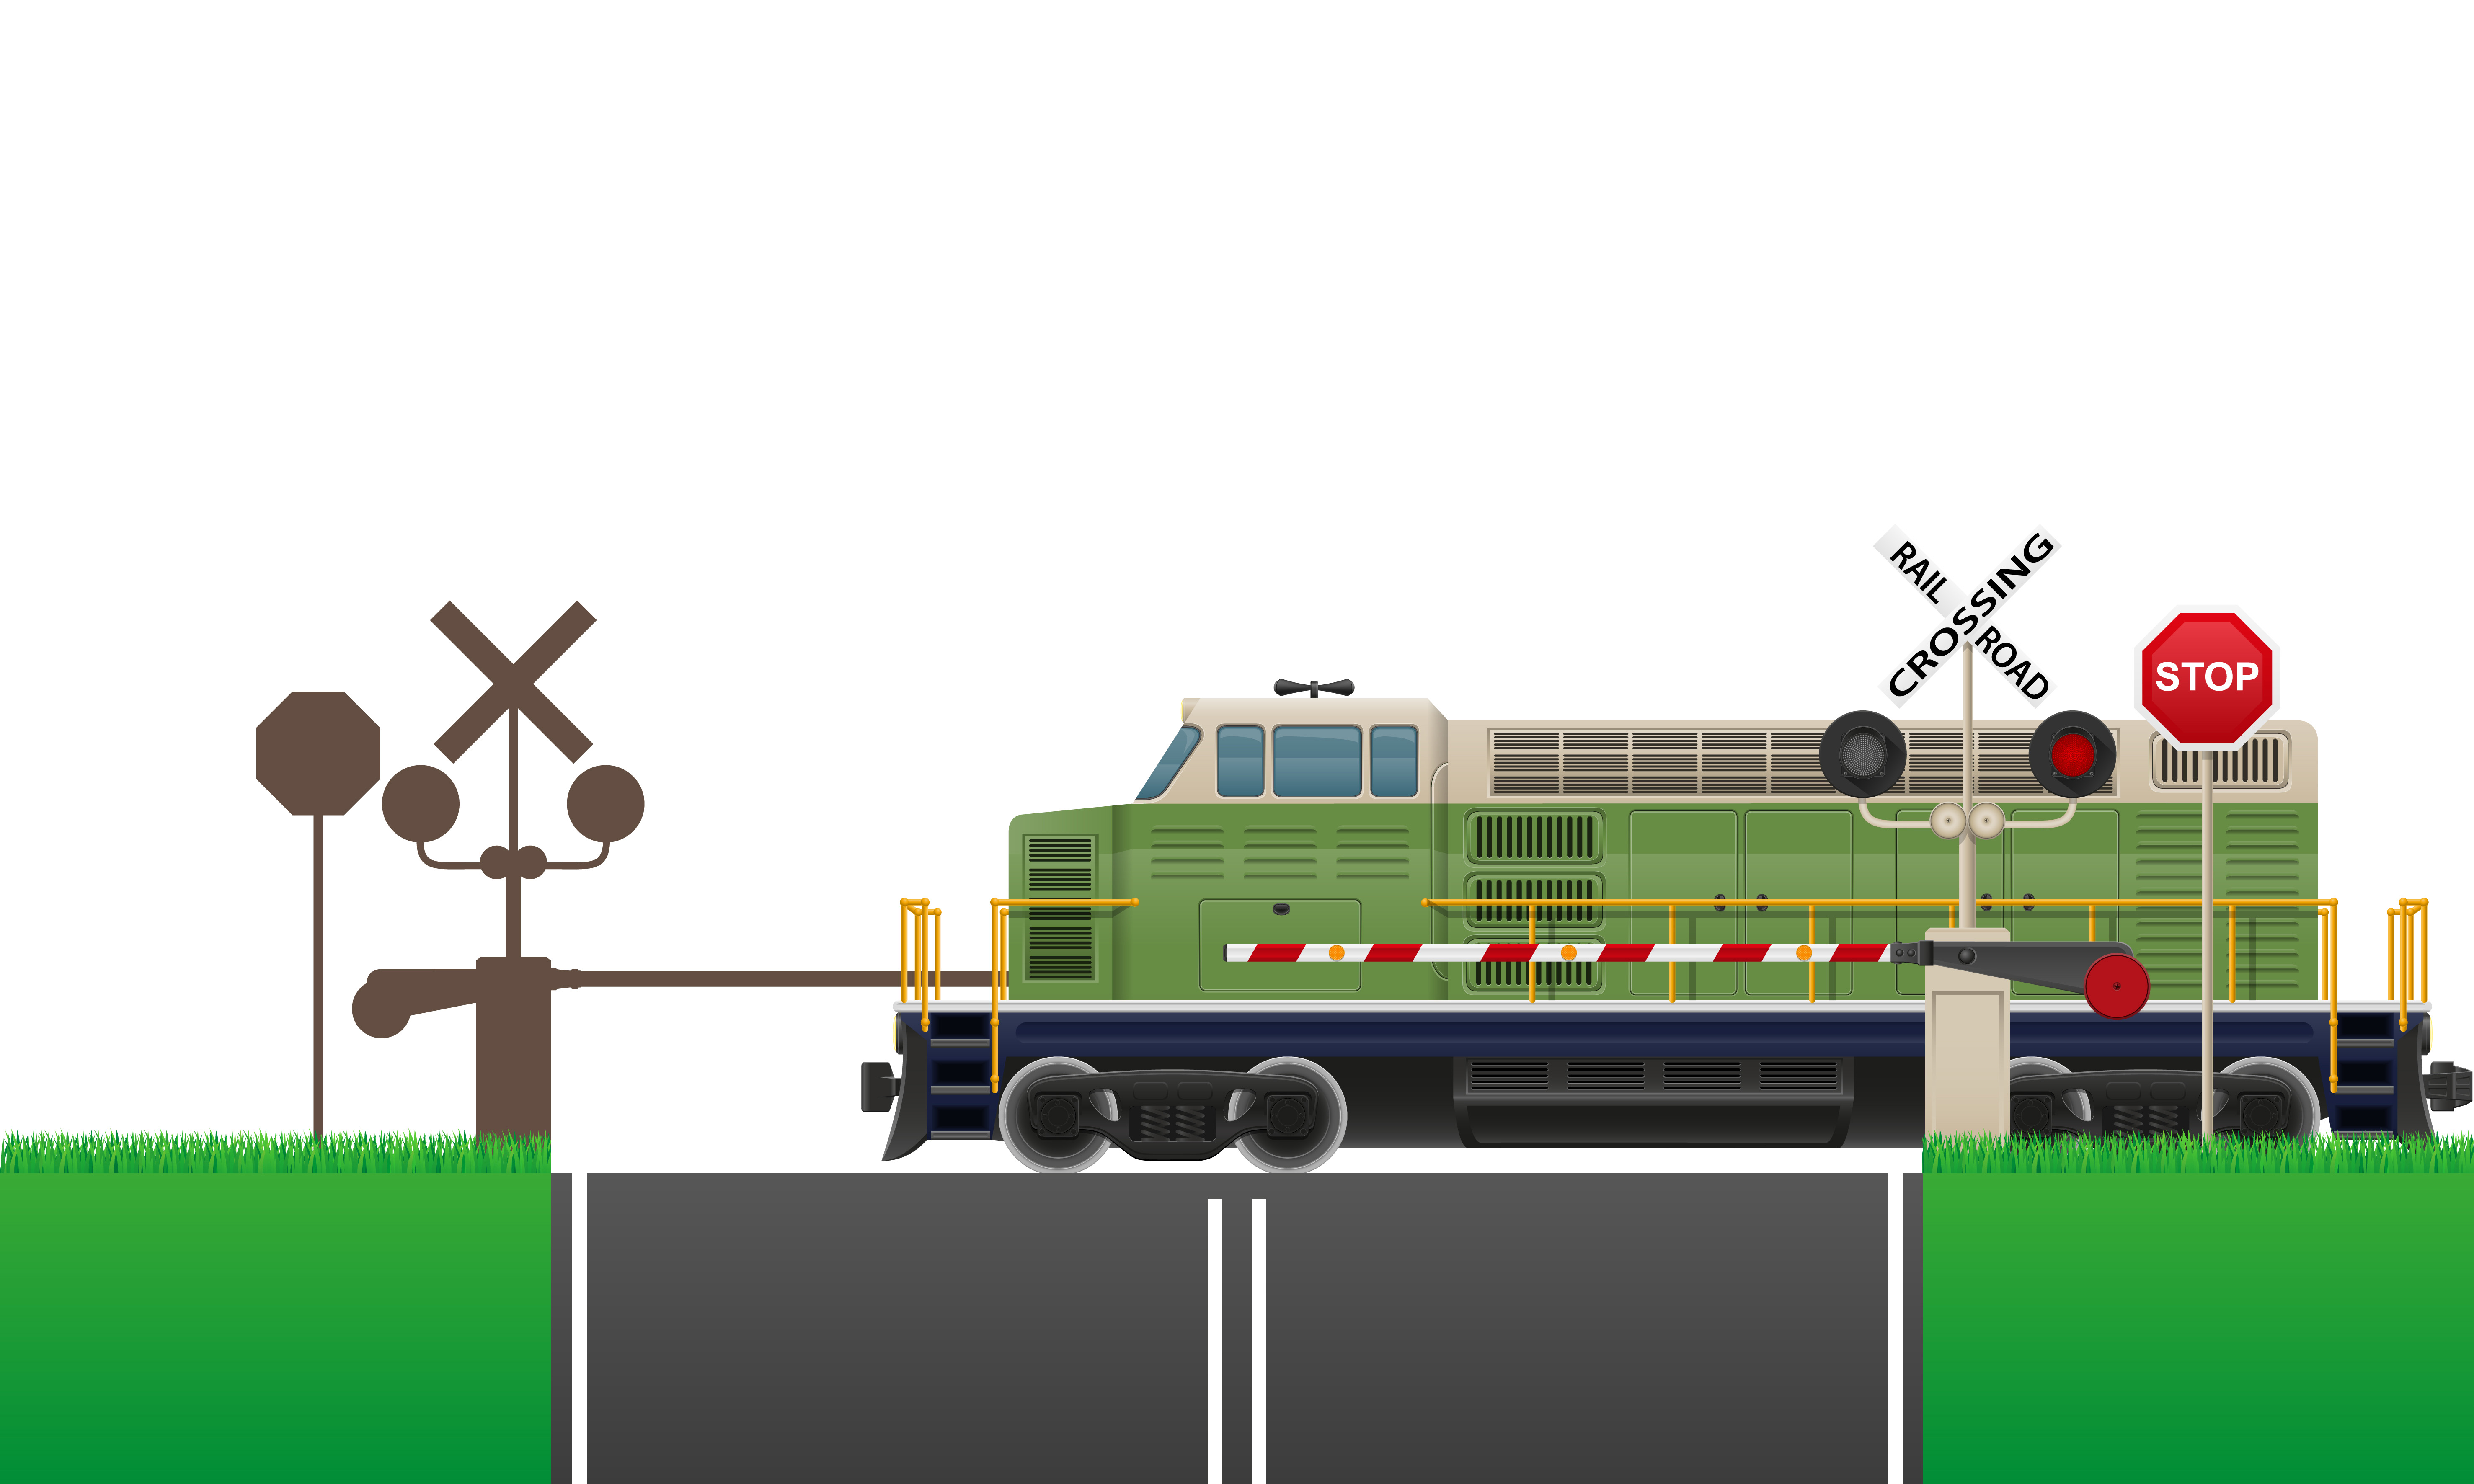 Картинки для детей железнодорожный светофор